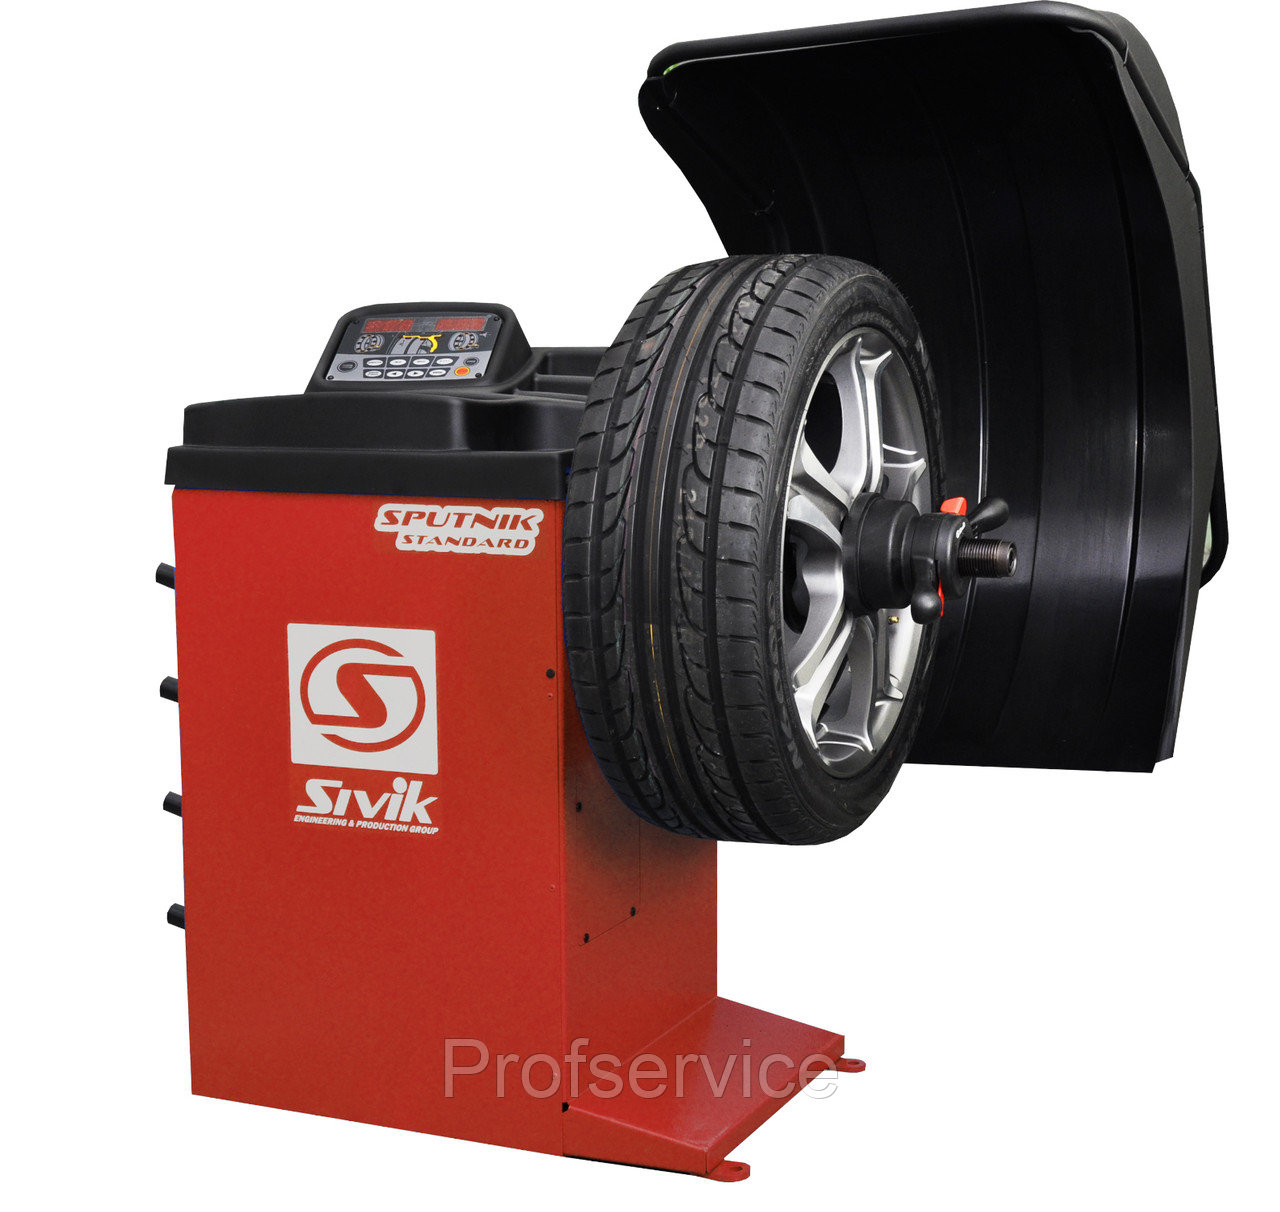 Балансировочный станок для колес легковых автомобилей Sivik СБМК-60 SPUTNIK Standart